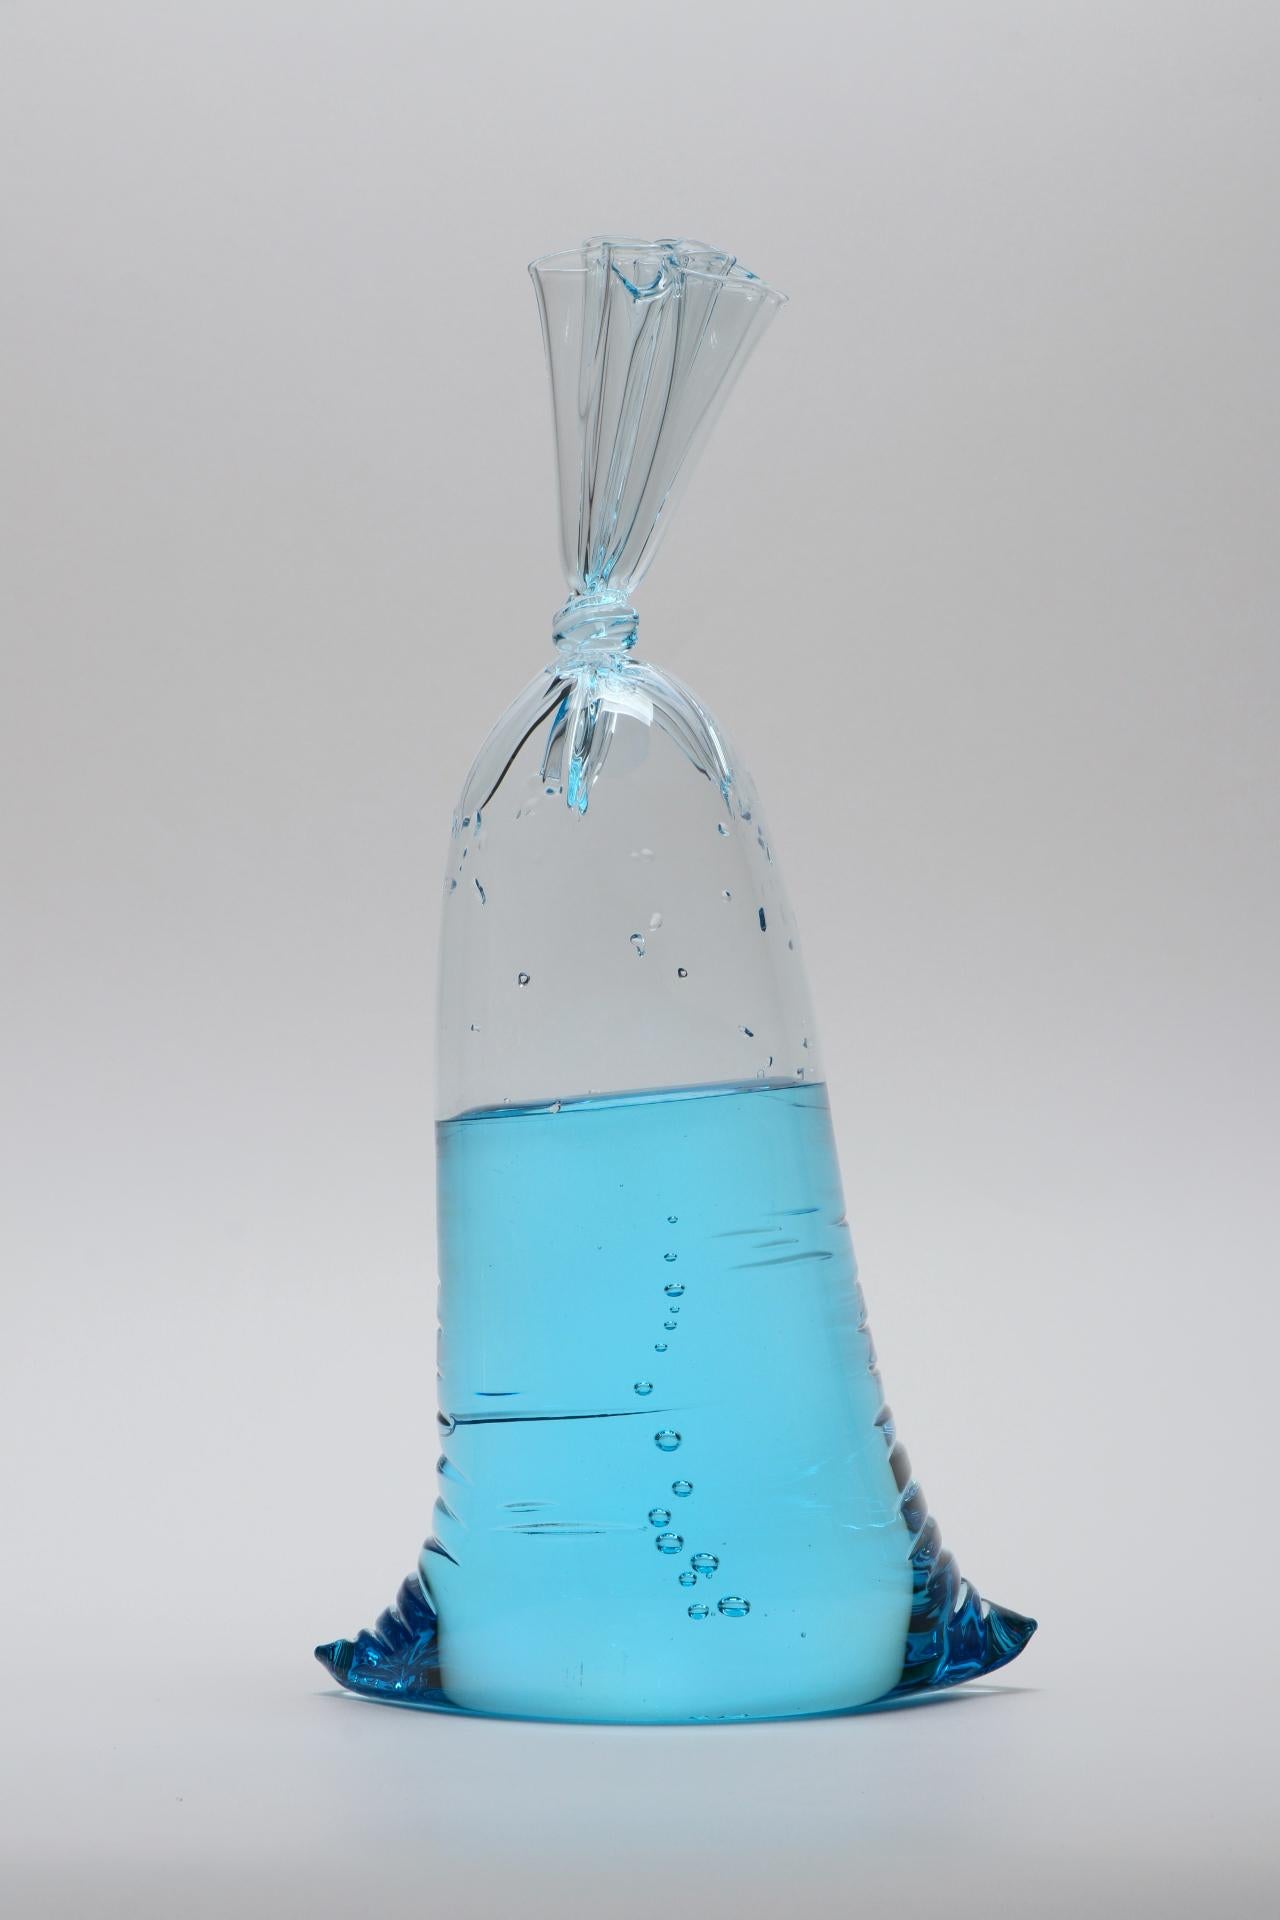 NEUE VERÖFFENTLICHUNG! Blue Series - Hyperreale kleine blaue Wassersack-Glasskulptur, Voll- und Hohlglas von Dylan Martinez. 

Größe: 14,75 x 7,5 x 4,75 Zoll

Die hyperrealen Skulpturen von Dylan Martinez bestehen aus heißgeformtem Glas, das der